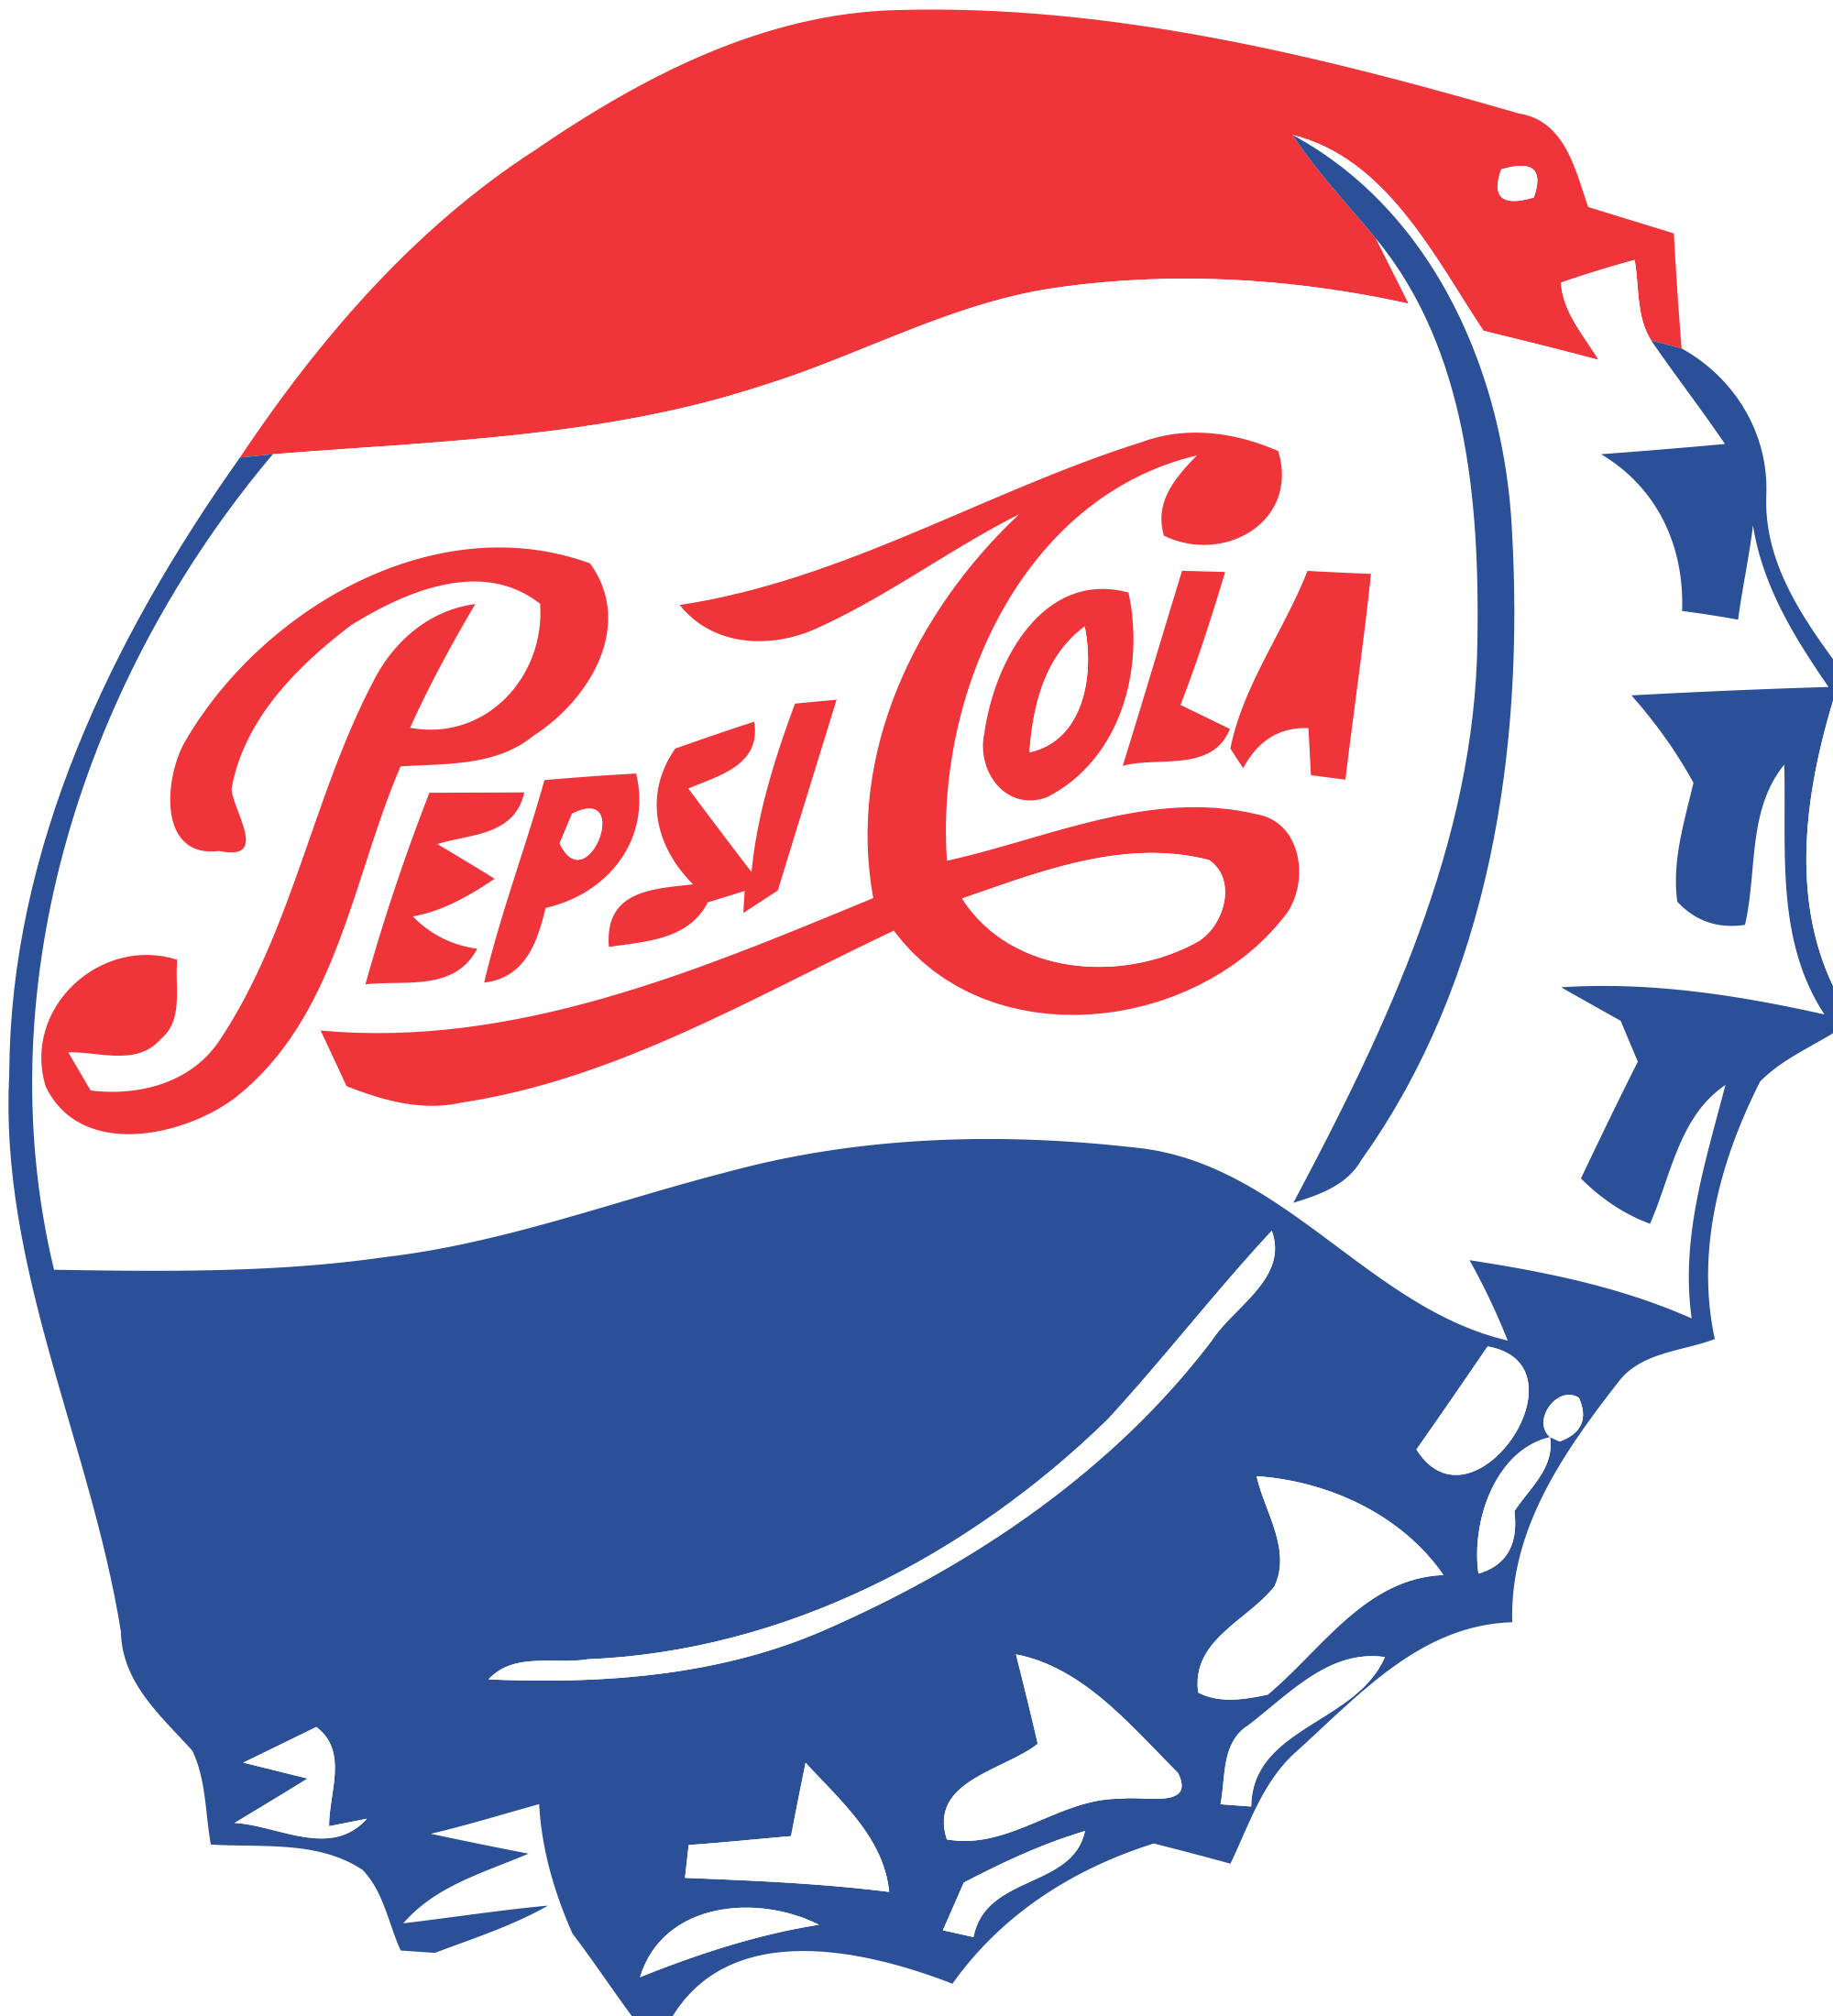 Retro Pepsi Logo - Pepsi | Brand Logos | Pinterest | Pepsi, Pepsi logo and Pepsi cola